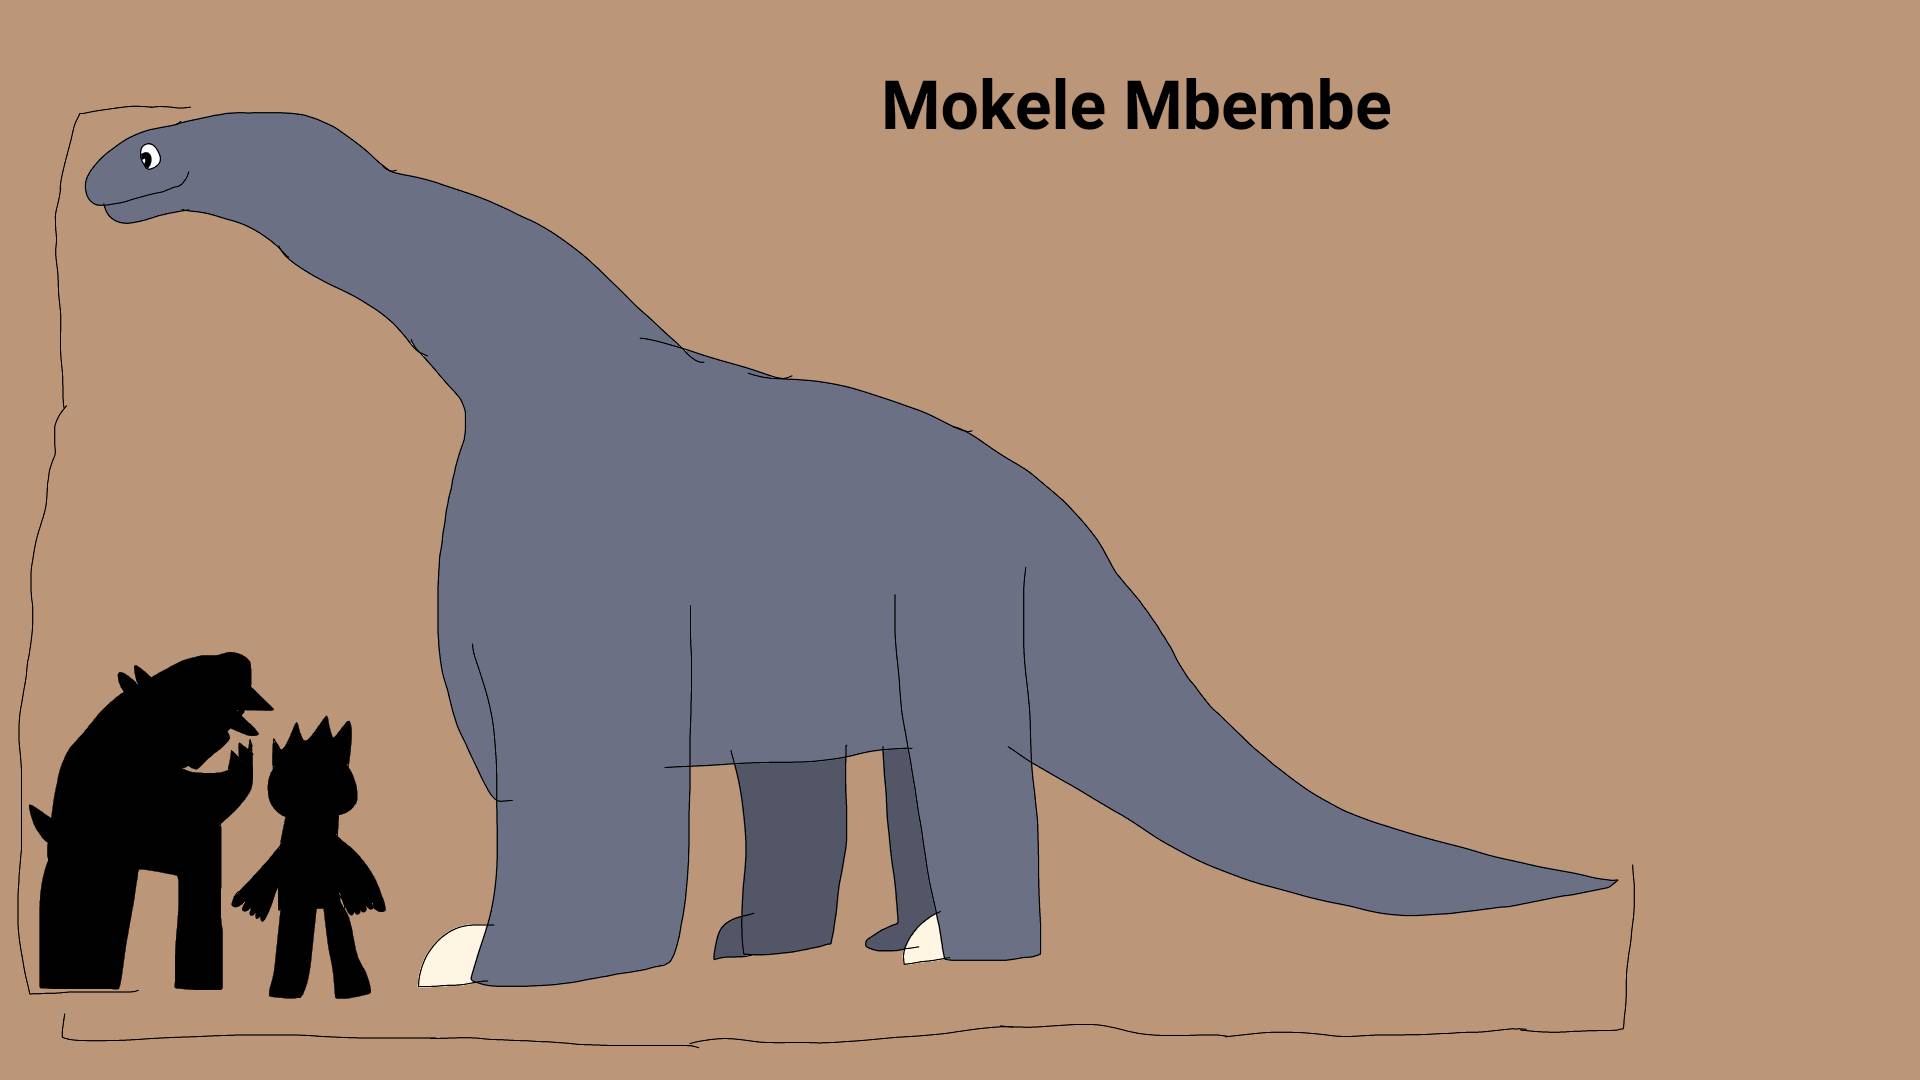 Mokele Mbembe by Hyrotrioskjan on DeviantArt